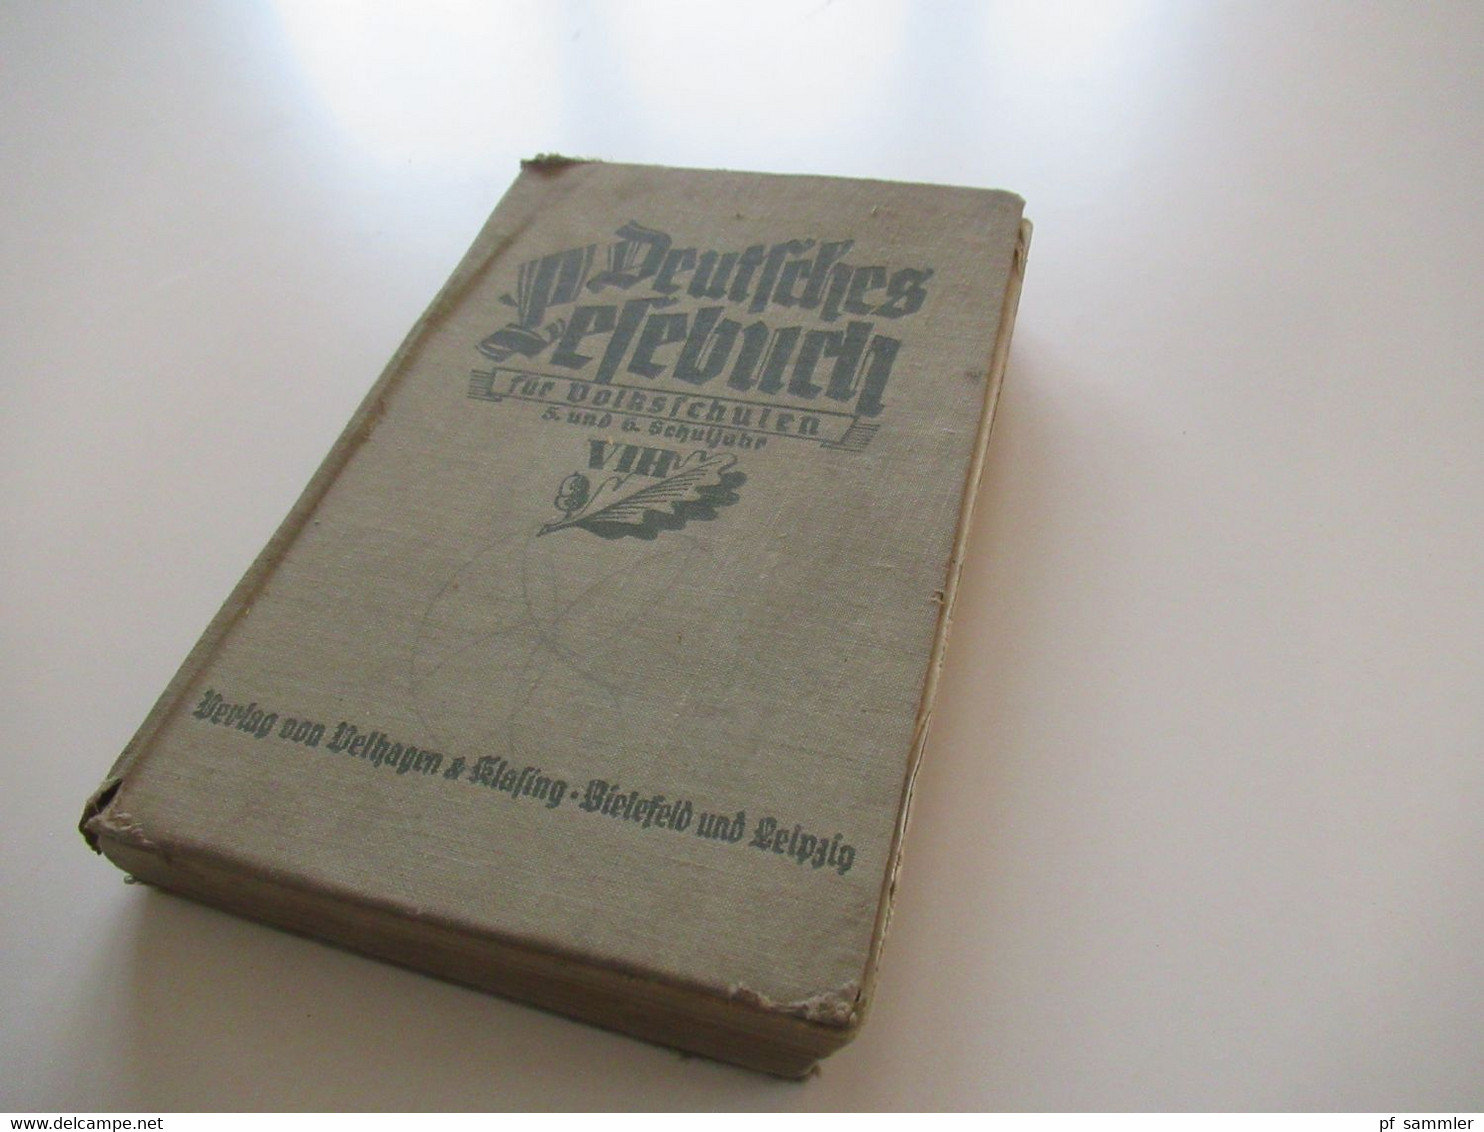 1937 Deutsches Lesebuch Für Volksschulen 5. Und 6. Schuljahr Verlag Von Velhagen Und Klasing Bielefeld Und Leipzig - Schoolboeken